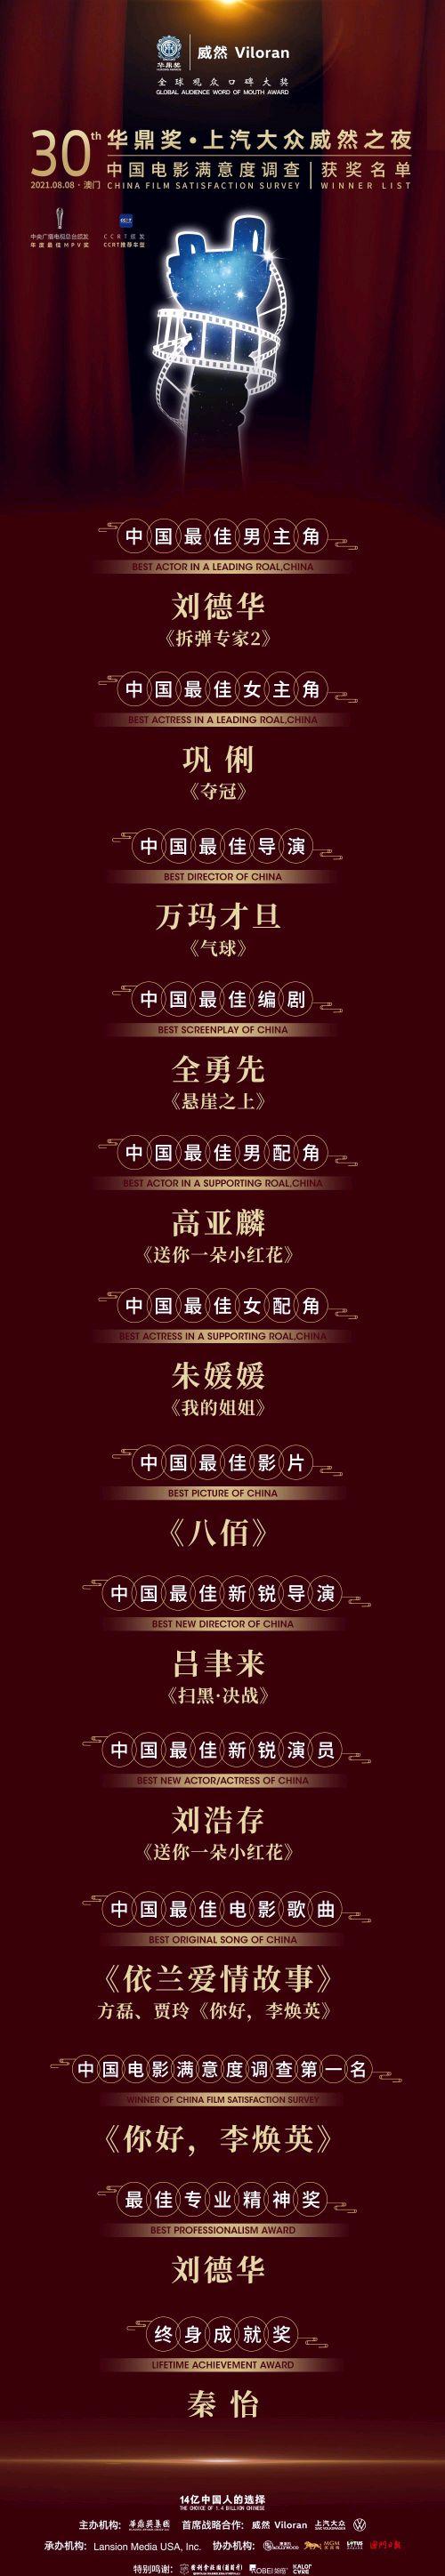 第30届华鼎奖获奖名单出炉，刘德华和巩俐获封影帝和影后